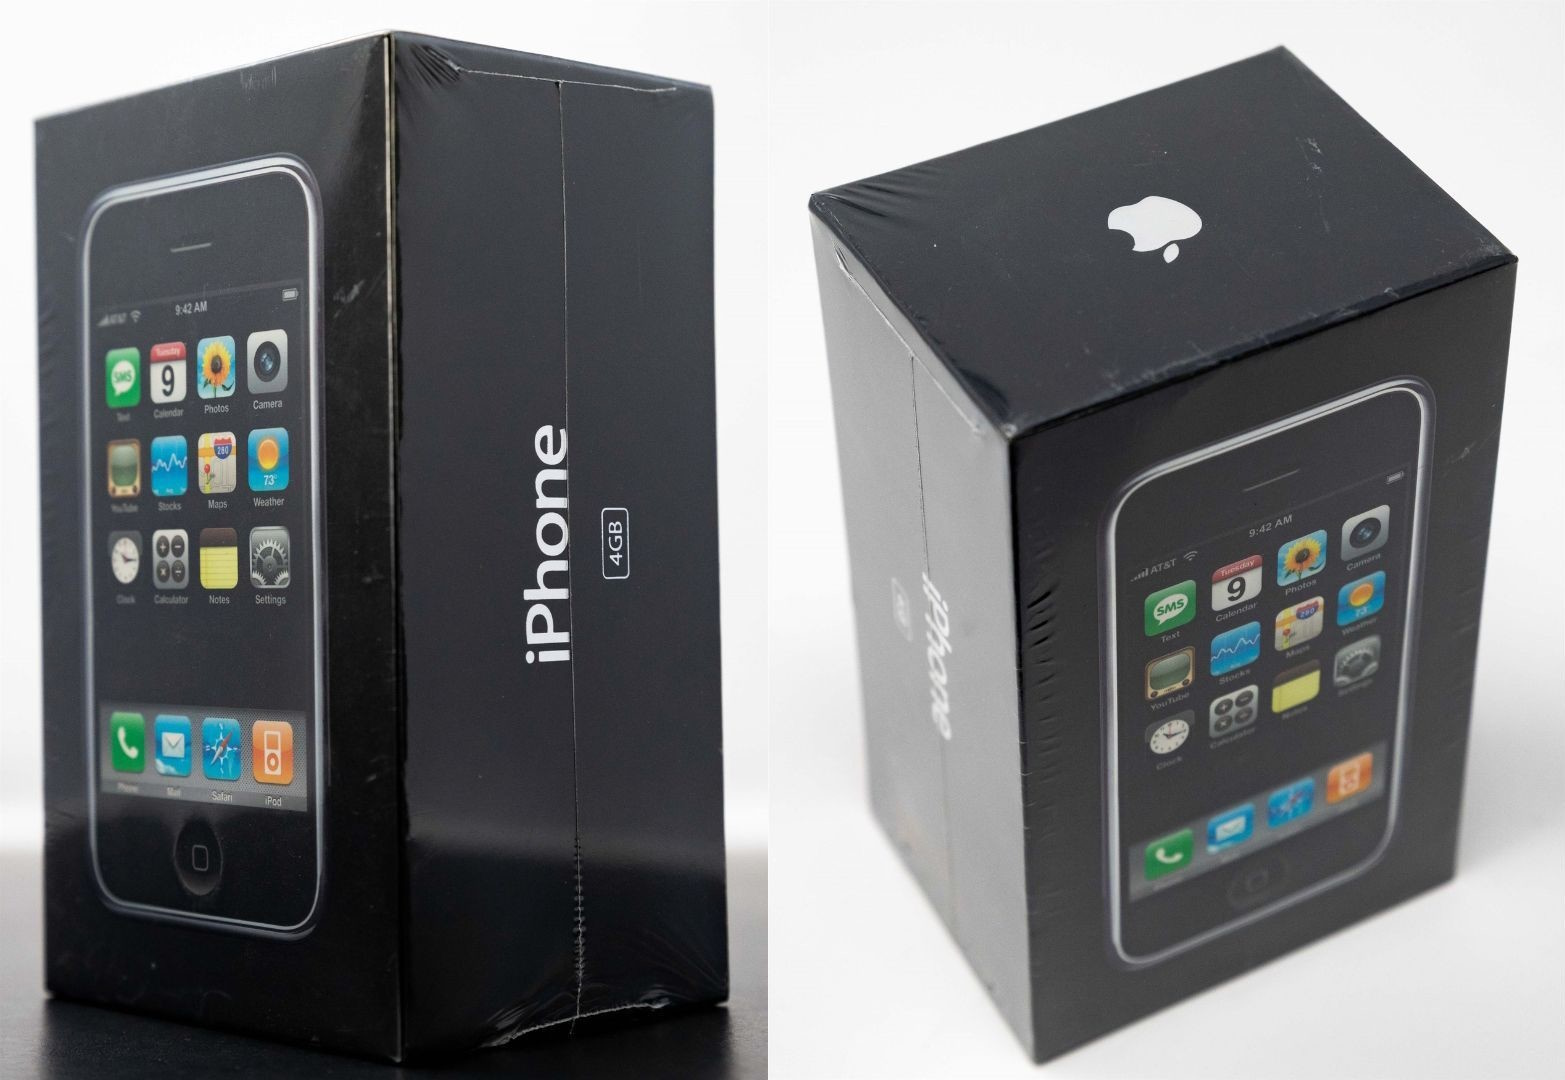 iPhone Original de 4 GB de 2007 vendido por $190,000